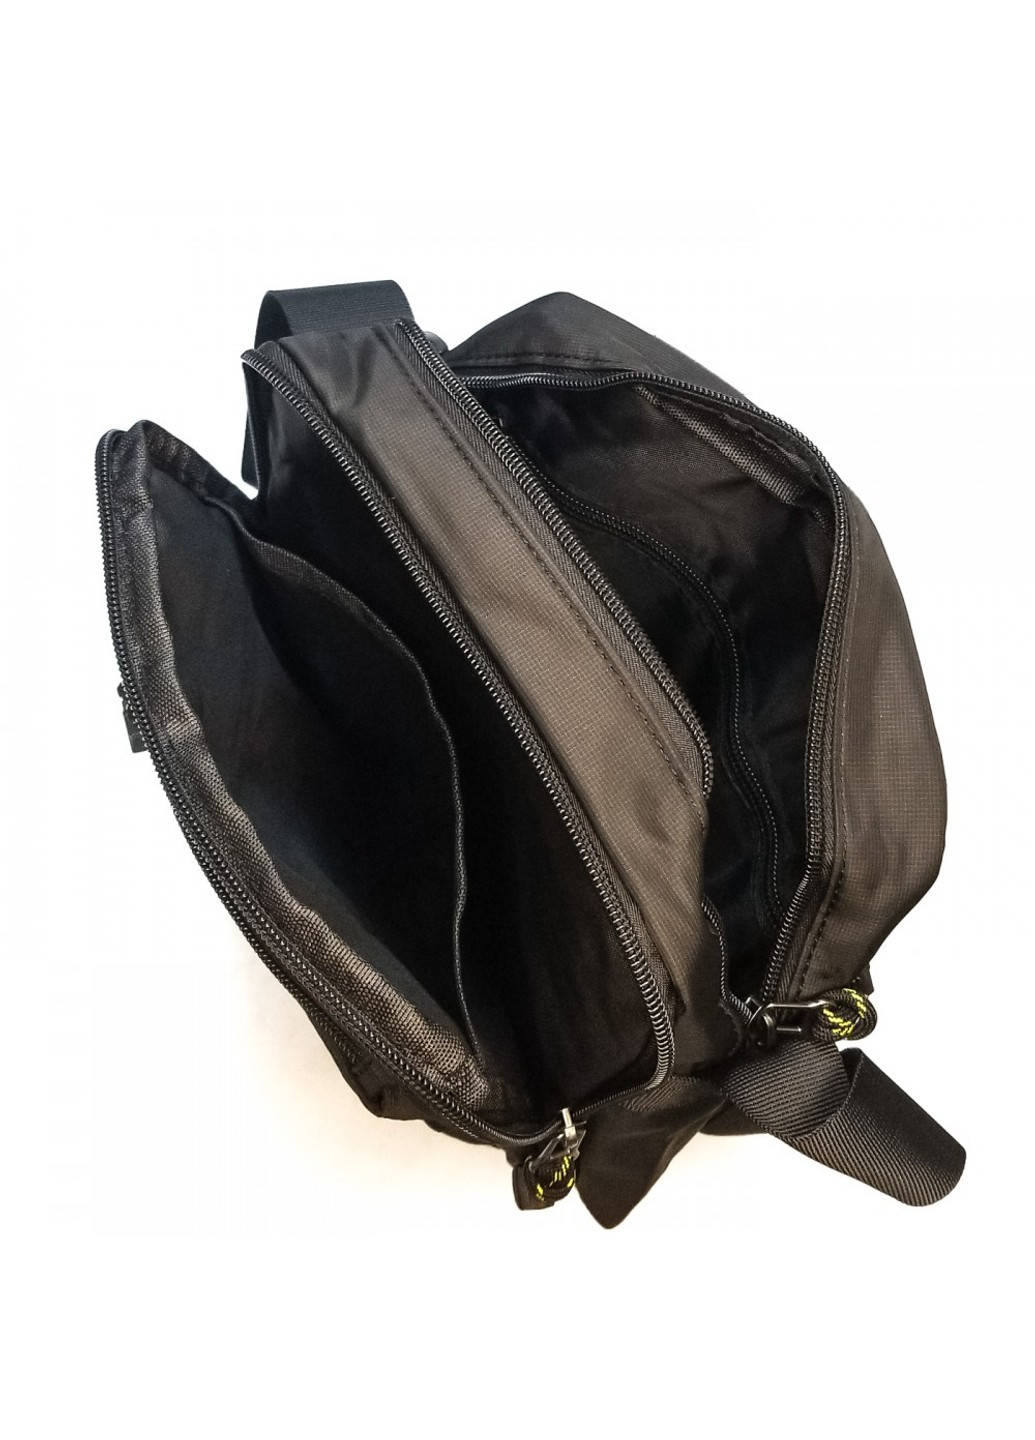 Мужская сумка через плечо 4123 black Lanpad (277925798)